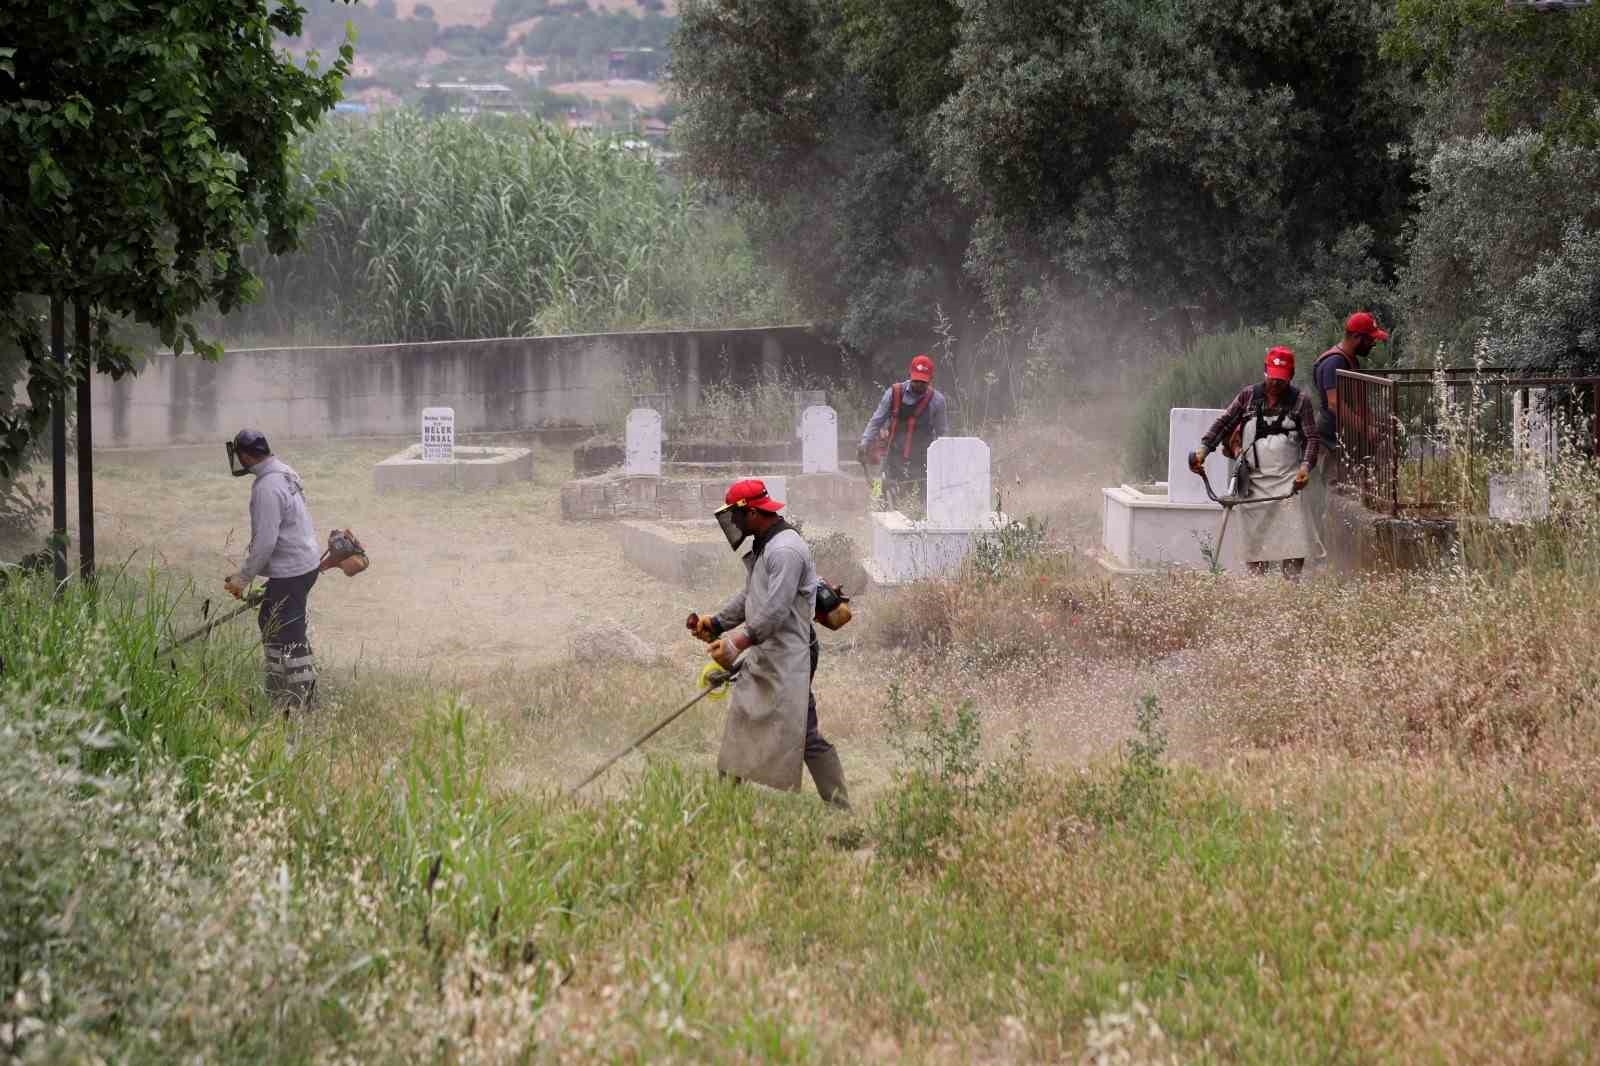 Efeler Belediyesi Mezarliklardaki Calismalarini Surduruyor 4E38D9Fdbf03015Ce2D457080Ff9F2A9